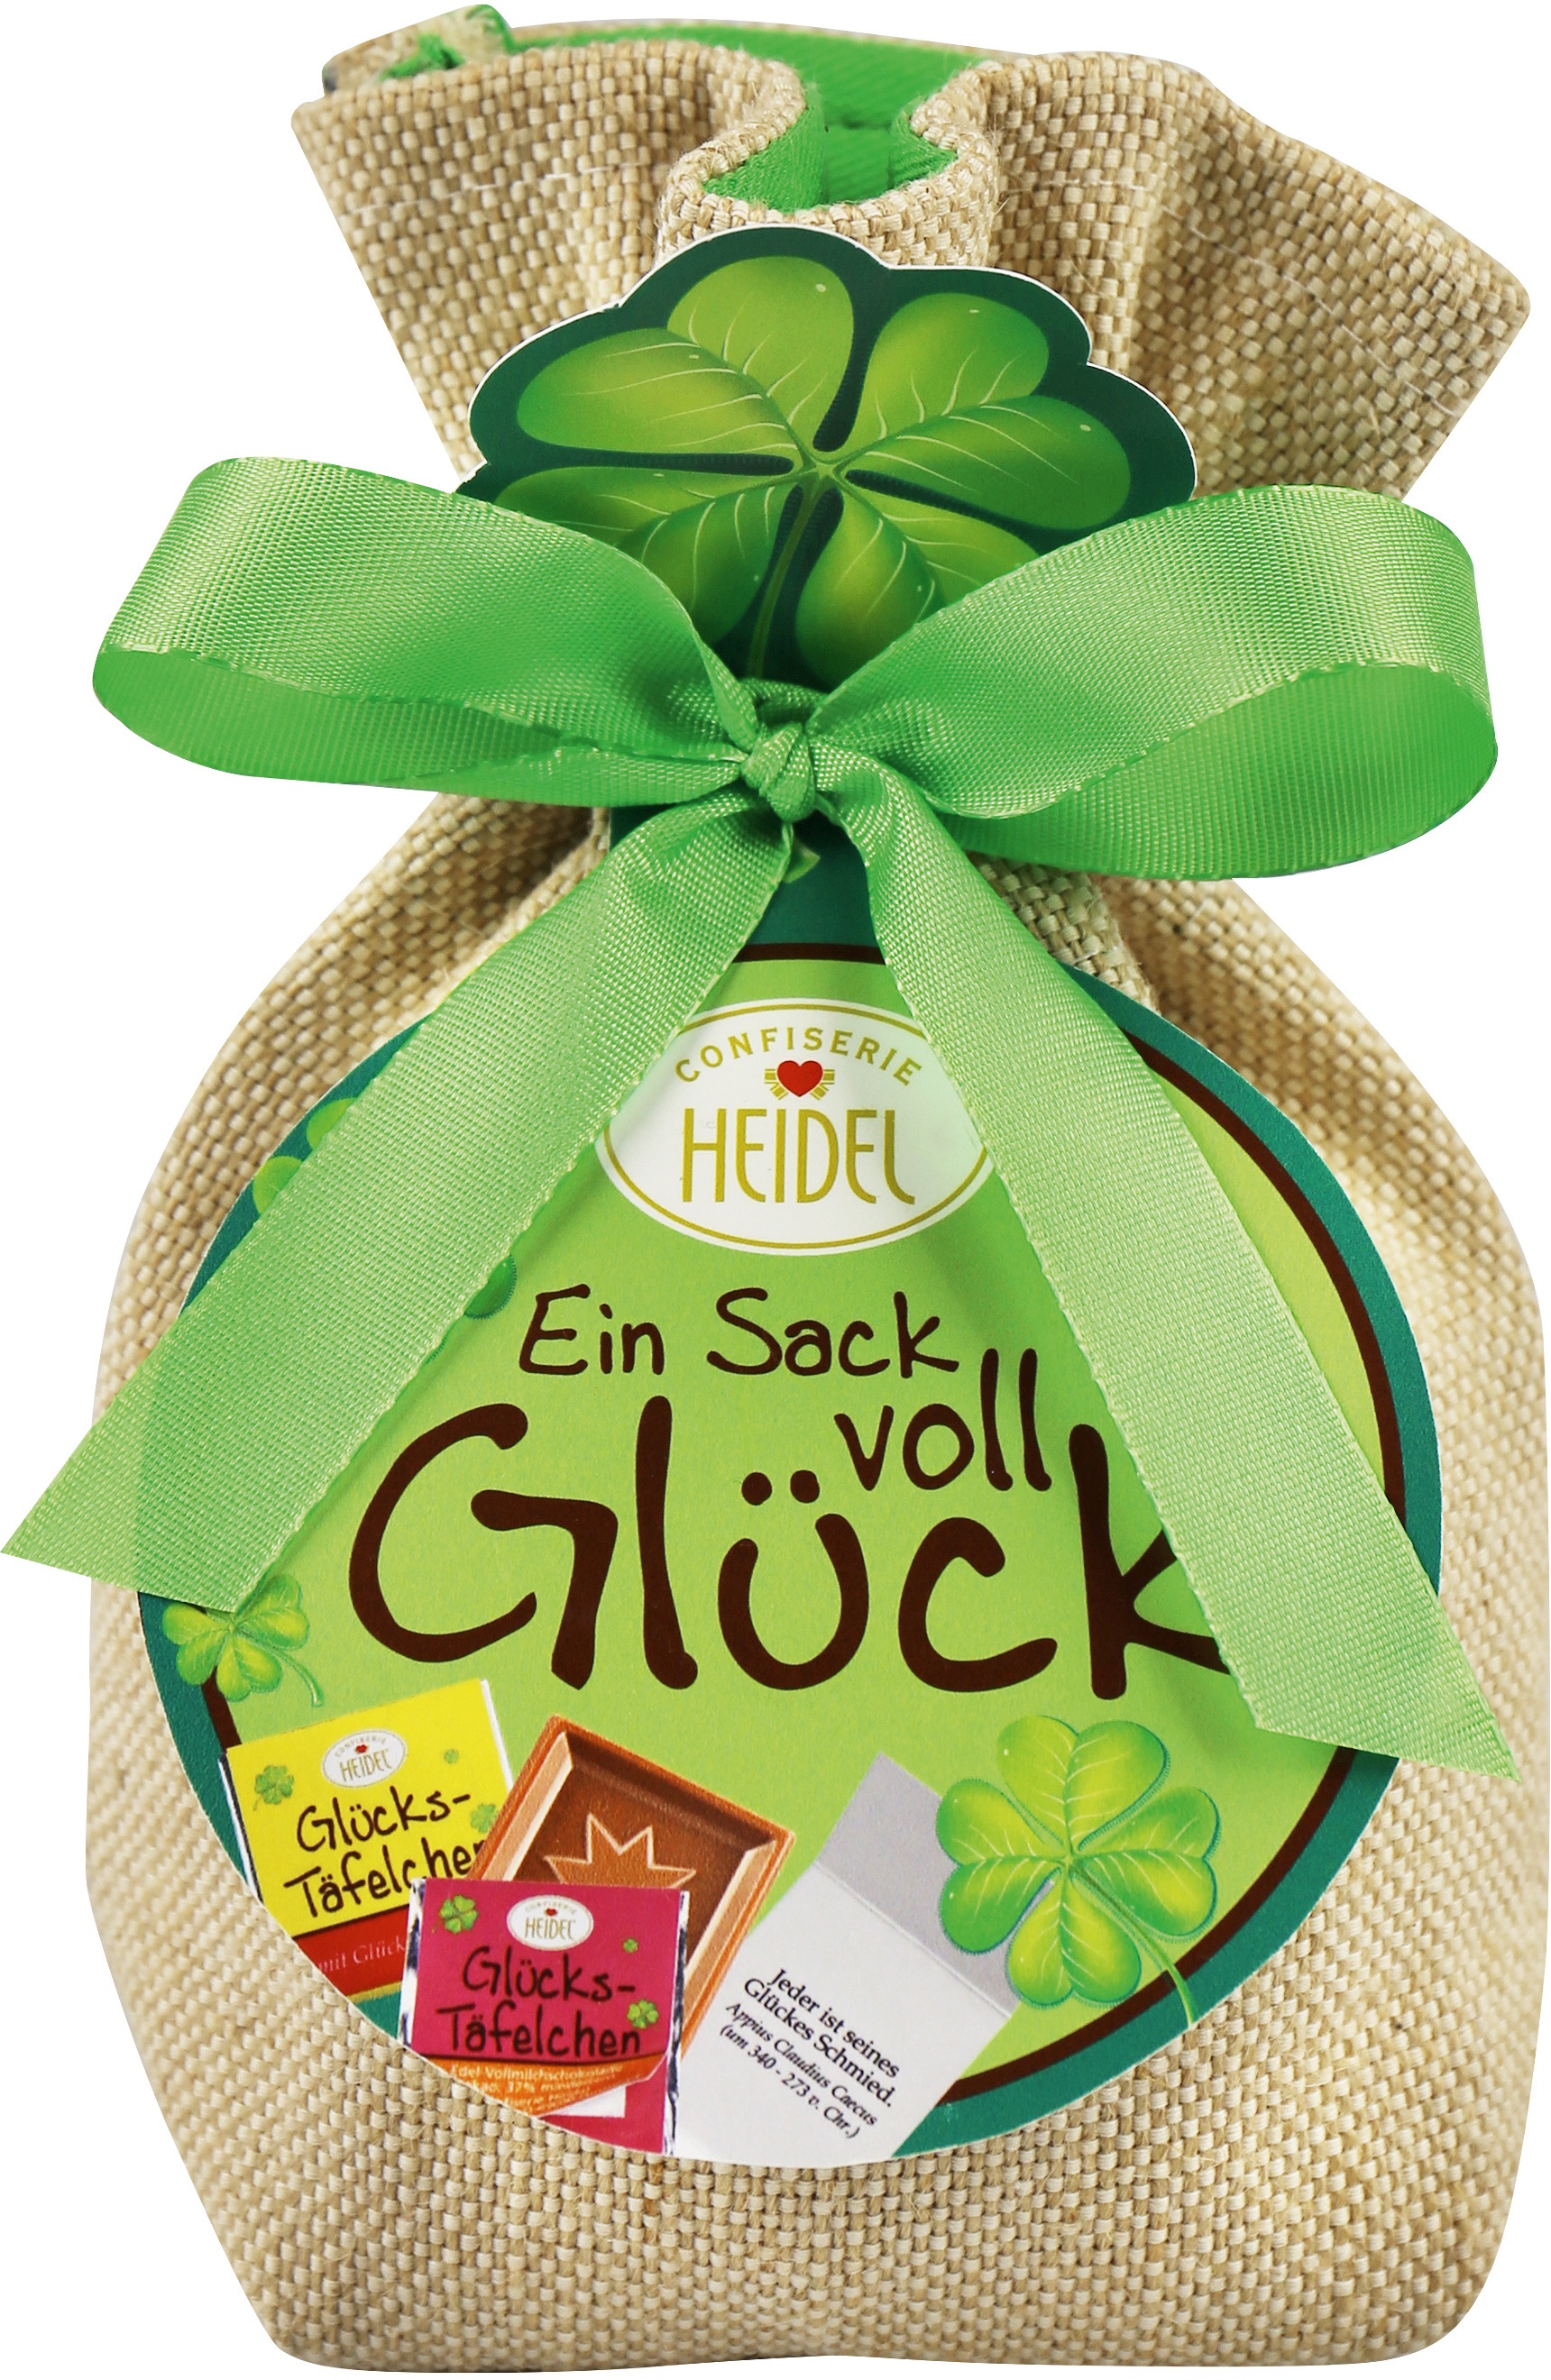 Glücks-Sack Mit Edel-Schokolade Mit Glücksbotschaften Von Confiserie Heidel